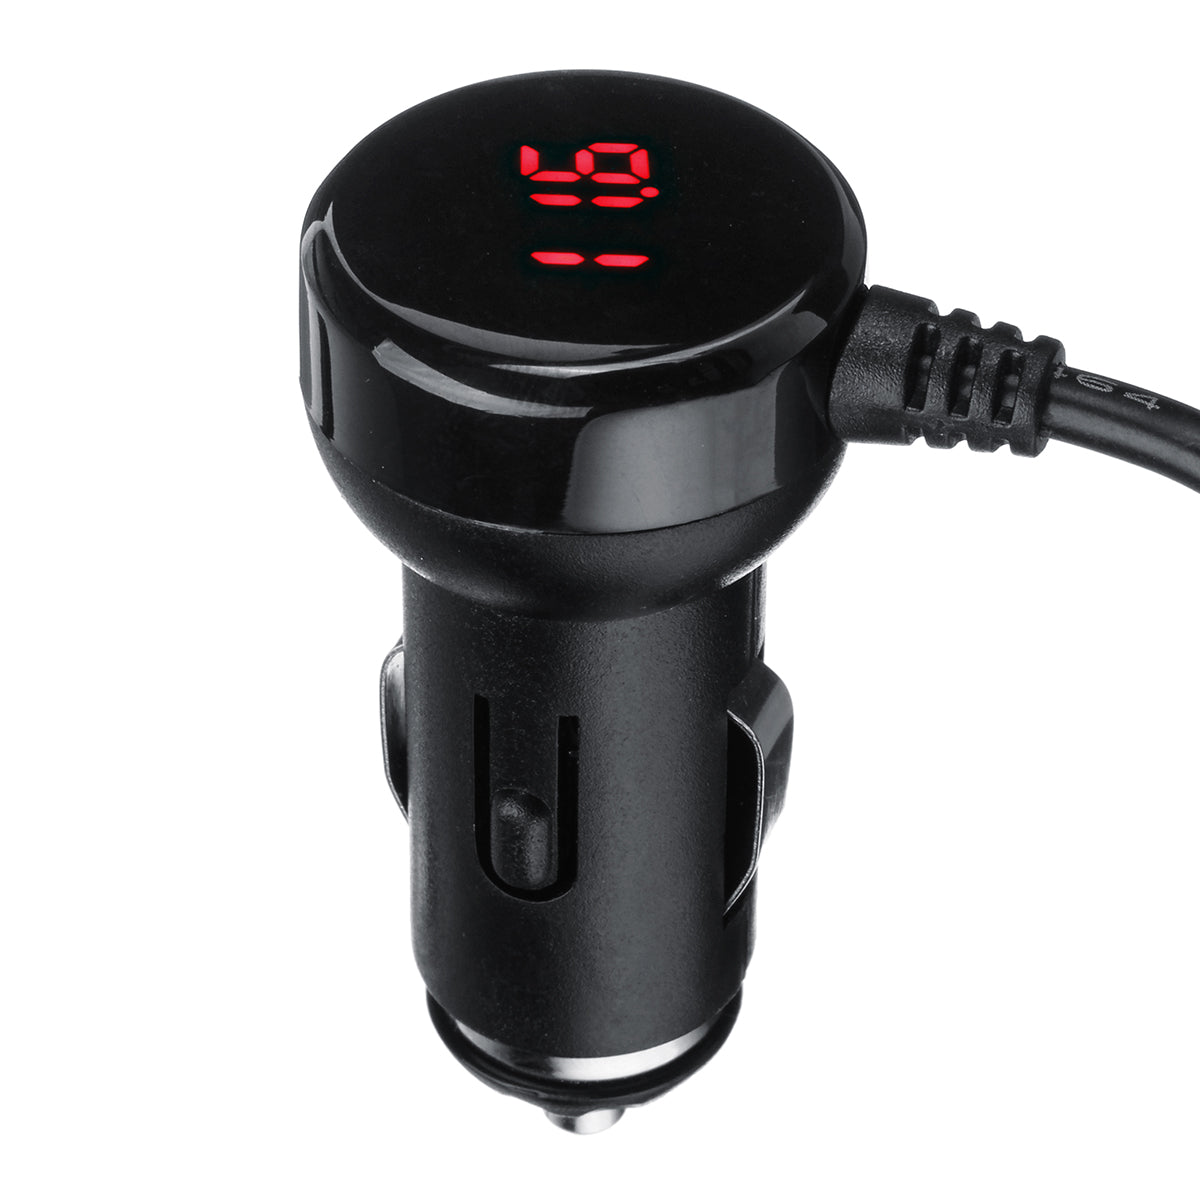 Black Dual USB Port 3Way Auto Car Charger Cigarette Lighter Socket DC 12V Plug Adapter